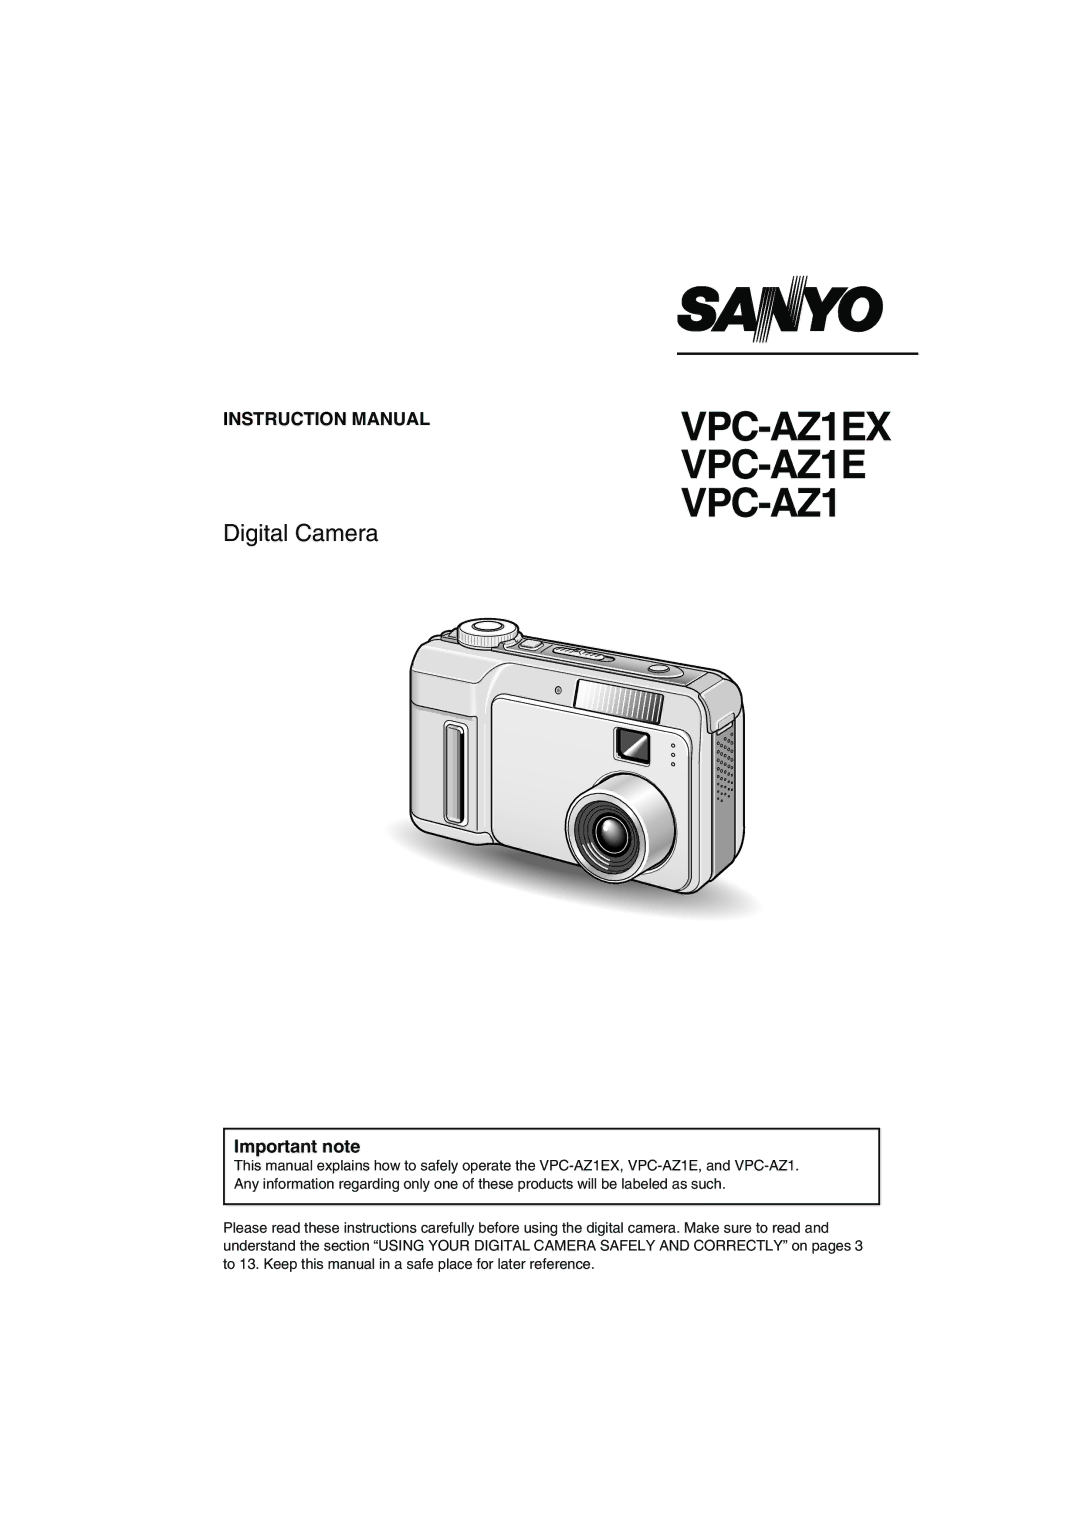 Sanyo instruction manual VPC-AZ1EX VPC-AZ1E VPC-AZ1, Important note 